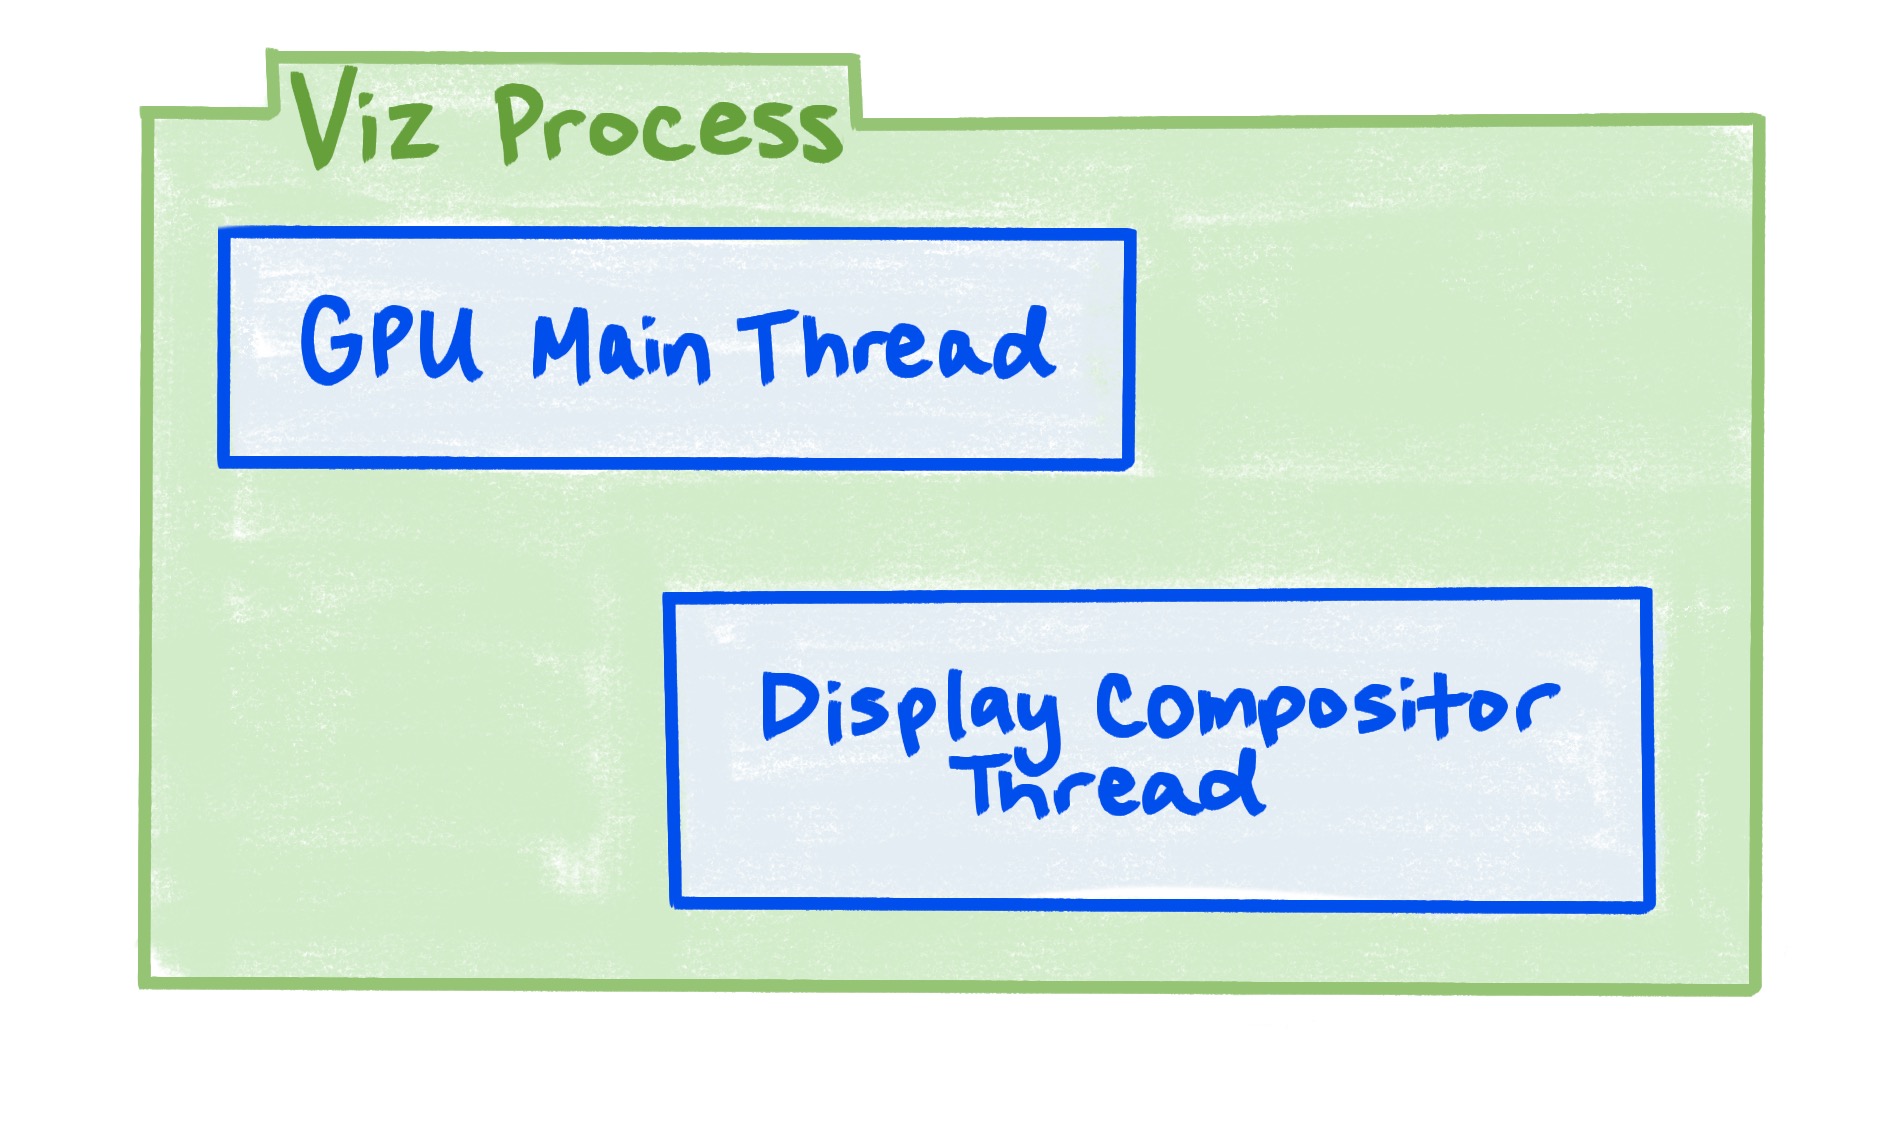 显示可视化进程包括 GPU 主线程和显示合成器线程的示意图。